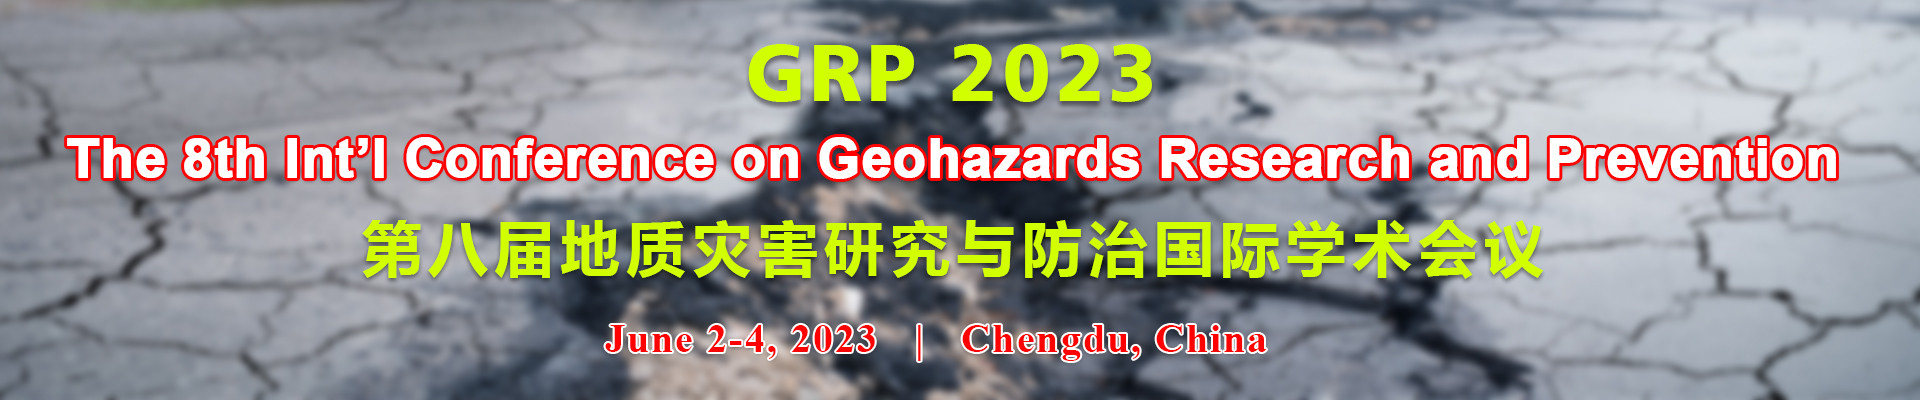 第八届地质灾害研究与防治国际学术会议(GRP 2023)